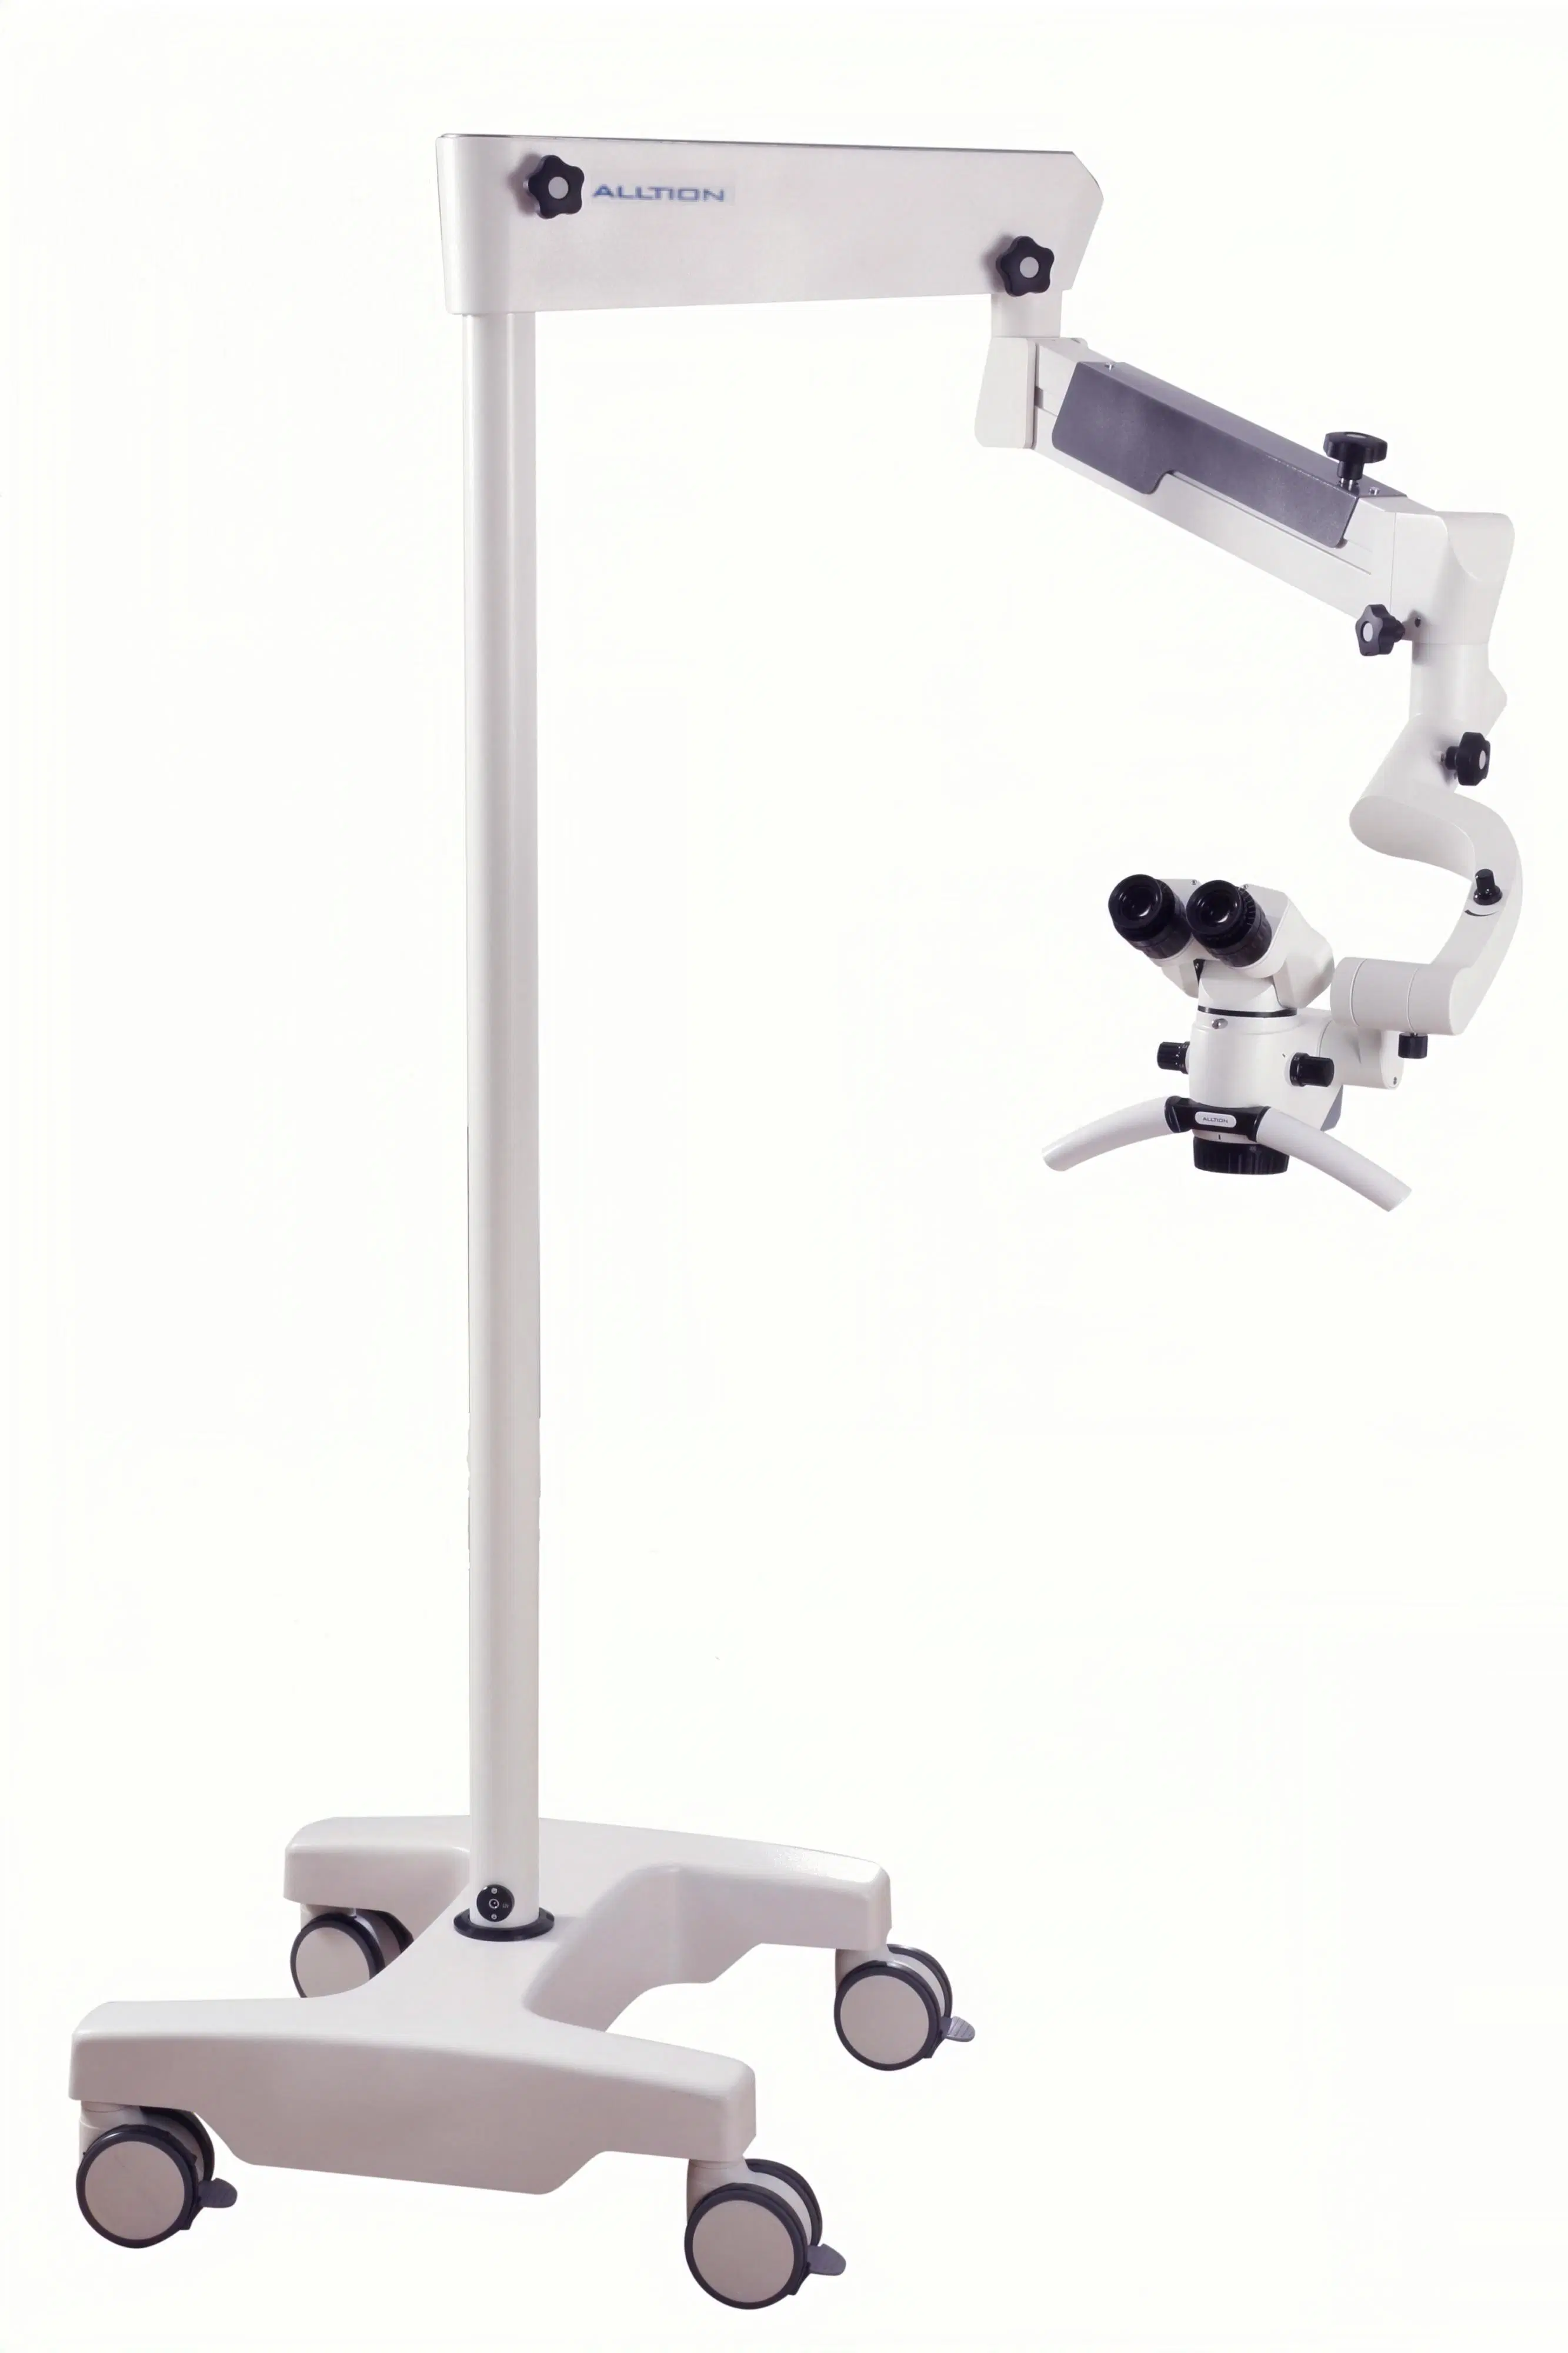 Am-2000 Microscope pour la chirurgie chirurgicale opératoire en ORL, dentaire, orthopédie, chirurgie de la main, neurochirurgie, andrologie et urologie, ainsi que pour la médecine vétérinaire P & R.